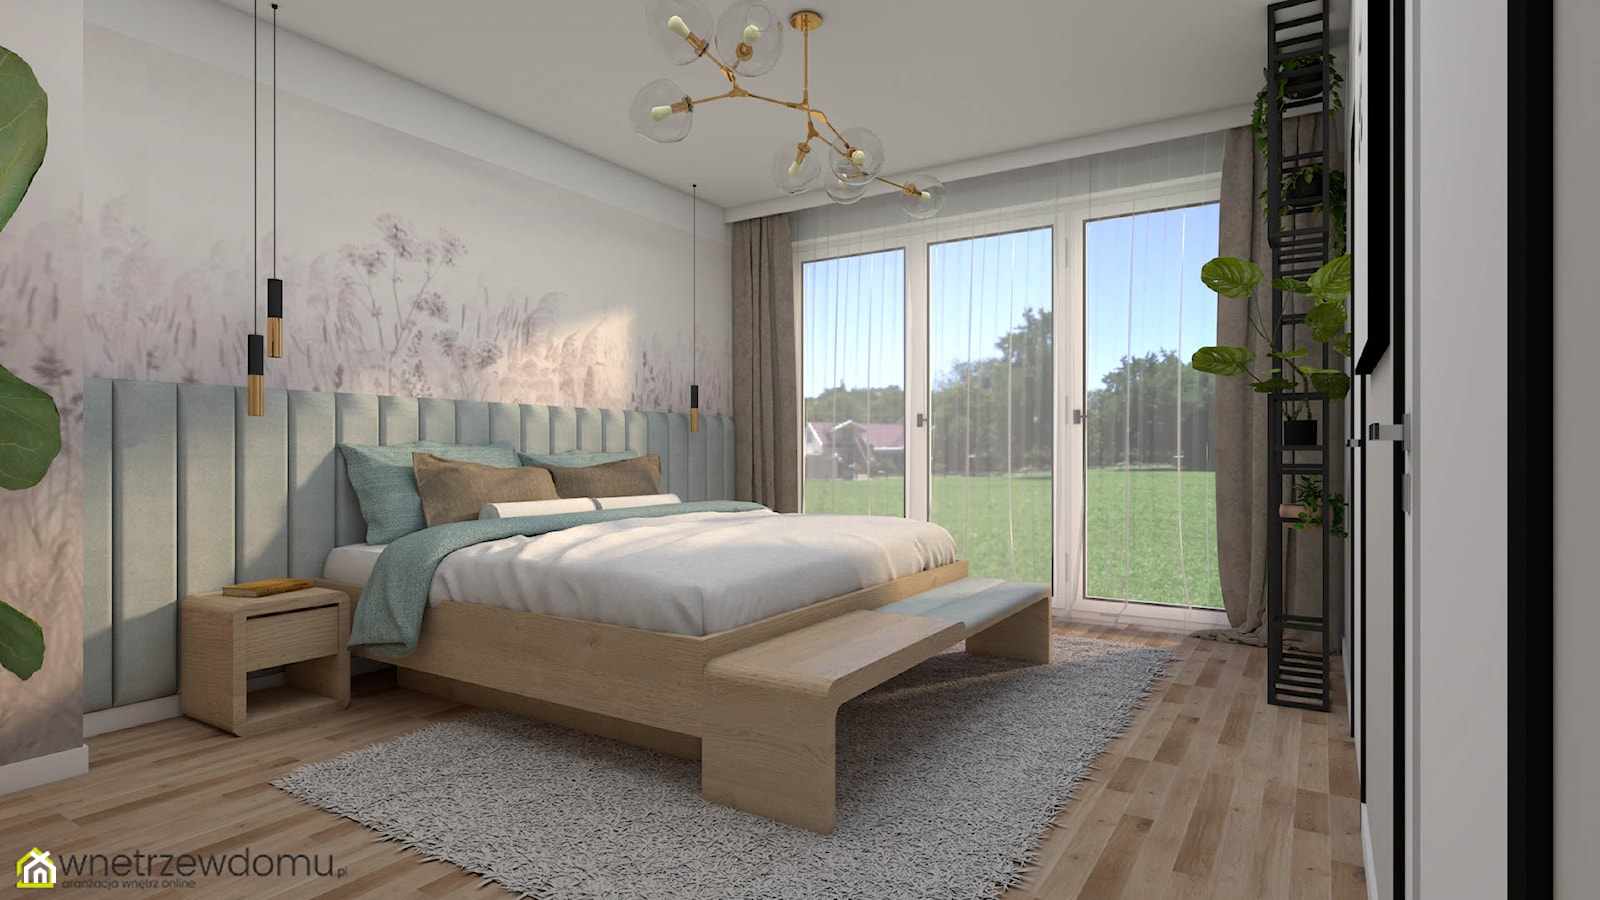 Sypialnia wykończona naturalnymi materiałami i kolorami - zdjęcie od wnetrzewdomu - Homebook